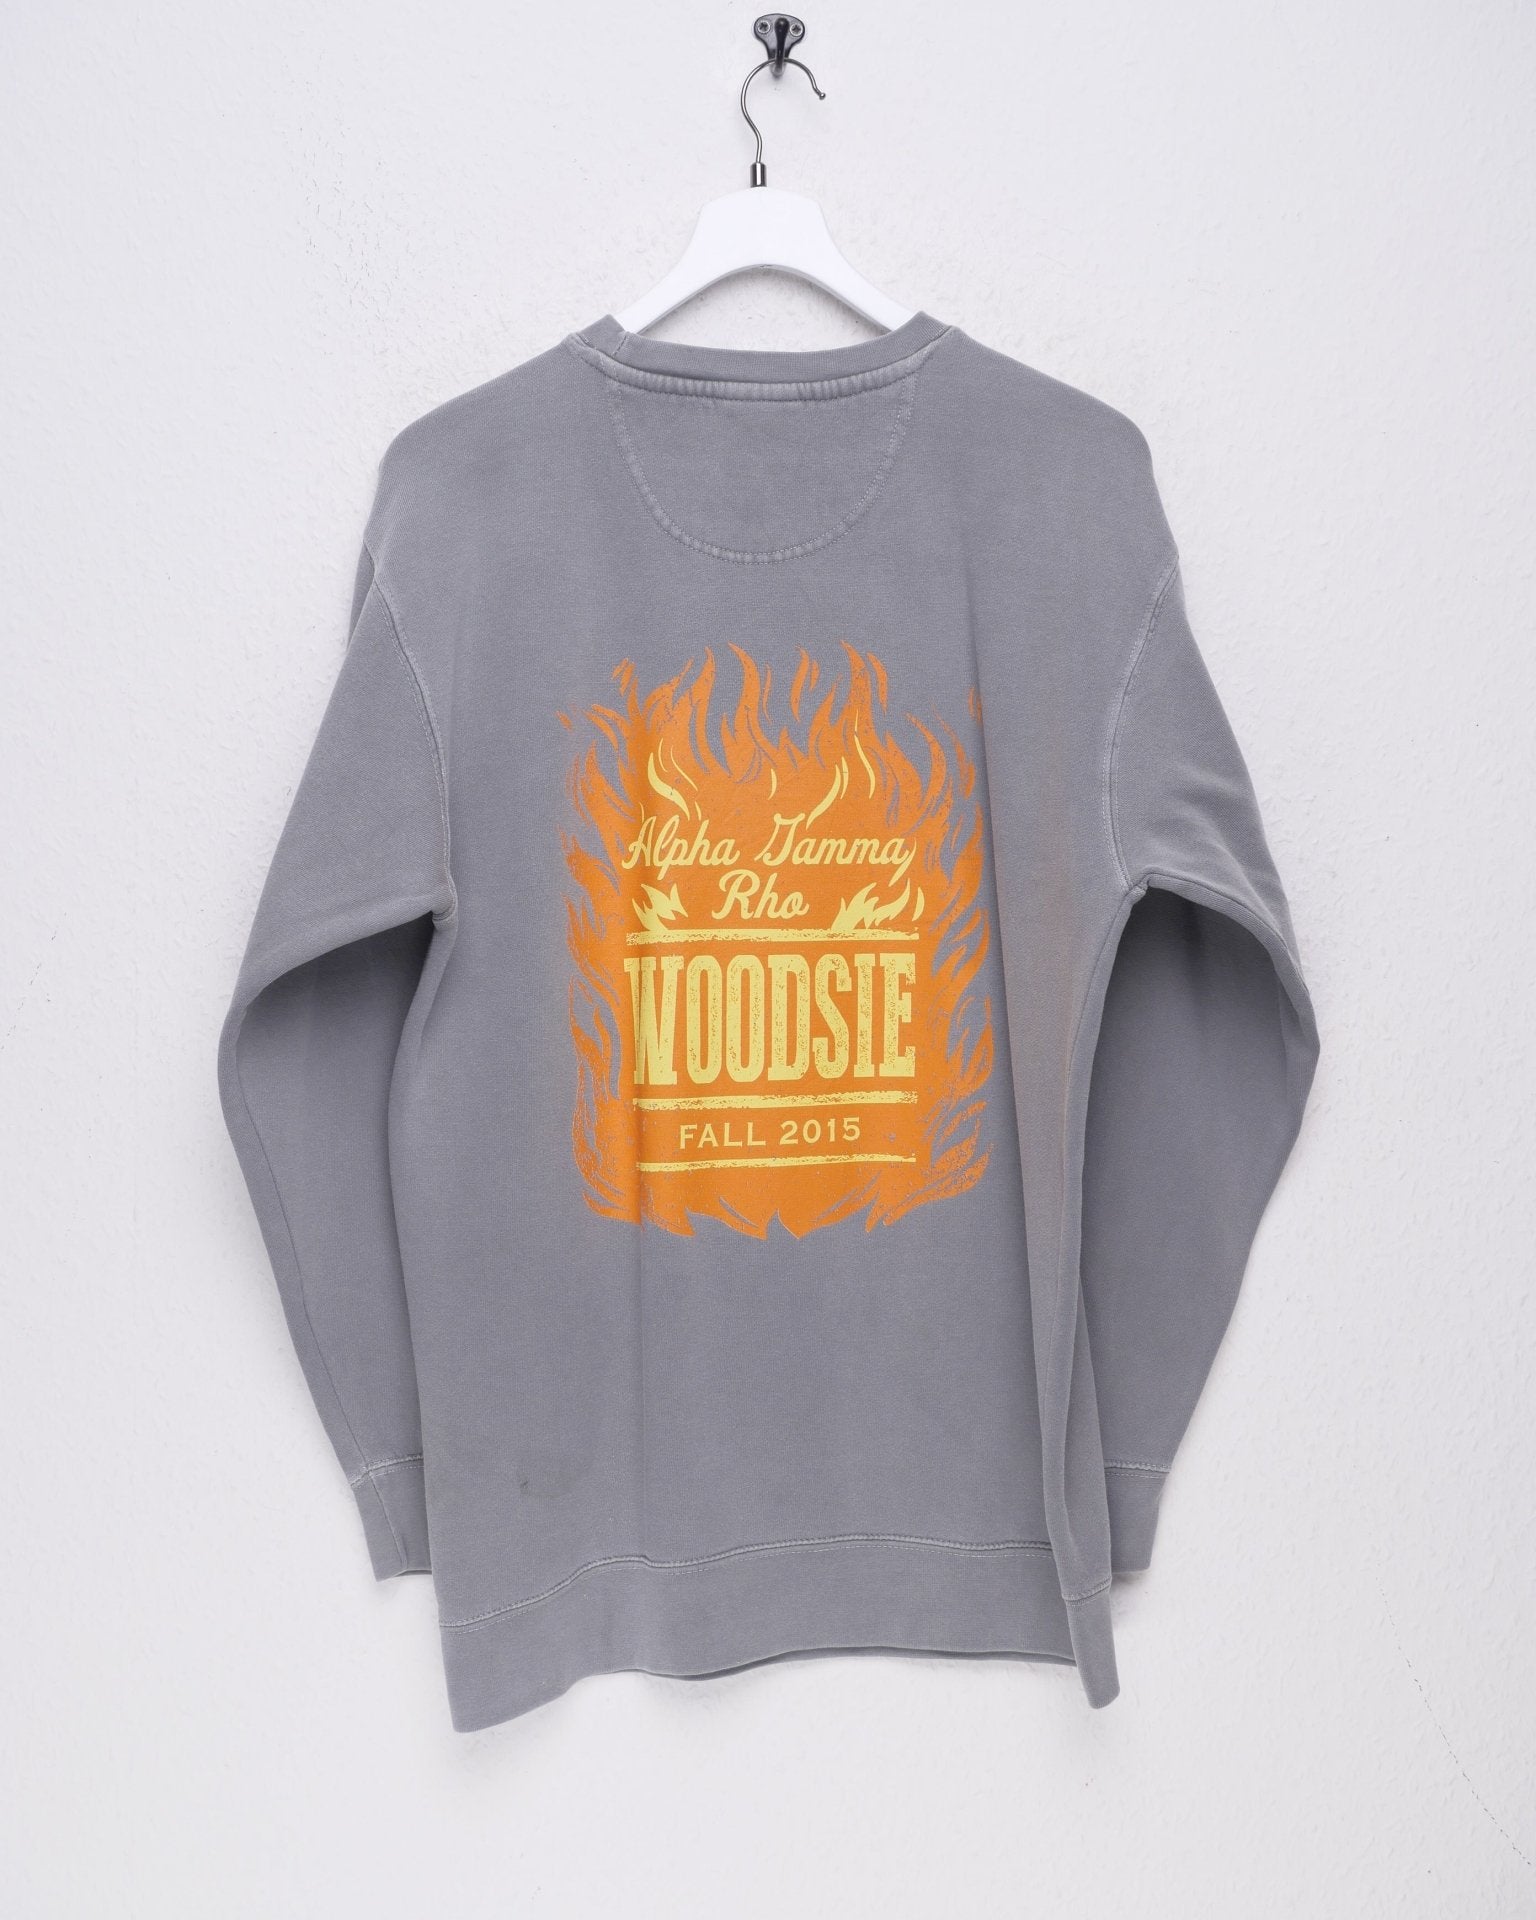 Woodsie 2015 printed Logo grey Sweater - Peeces